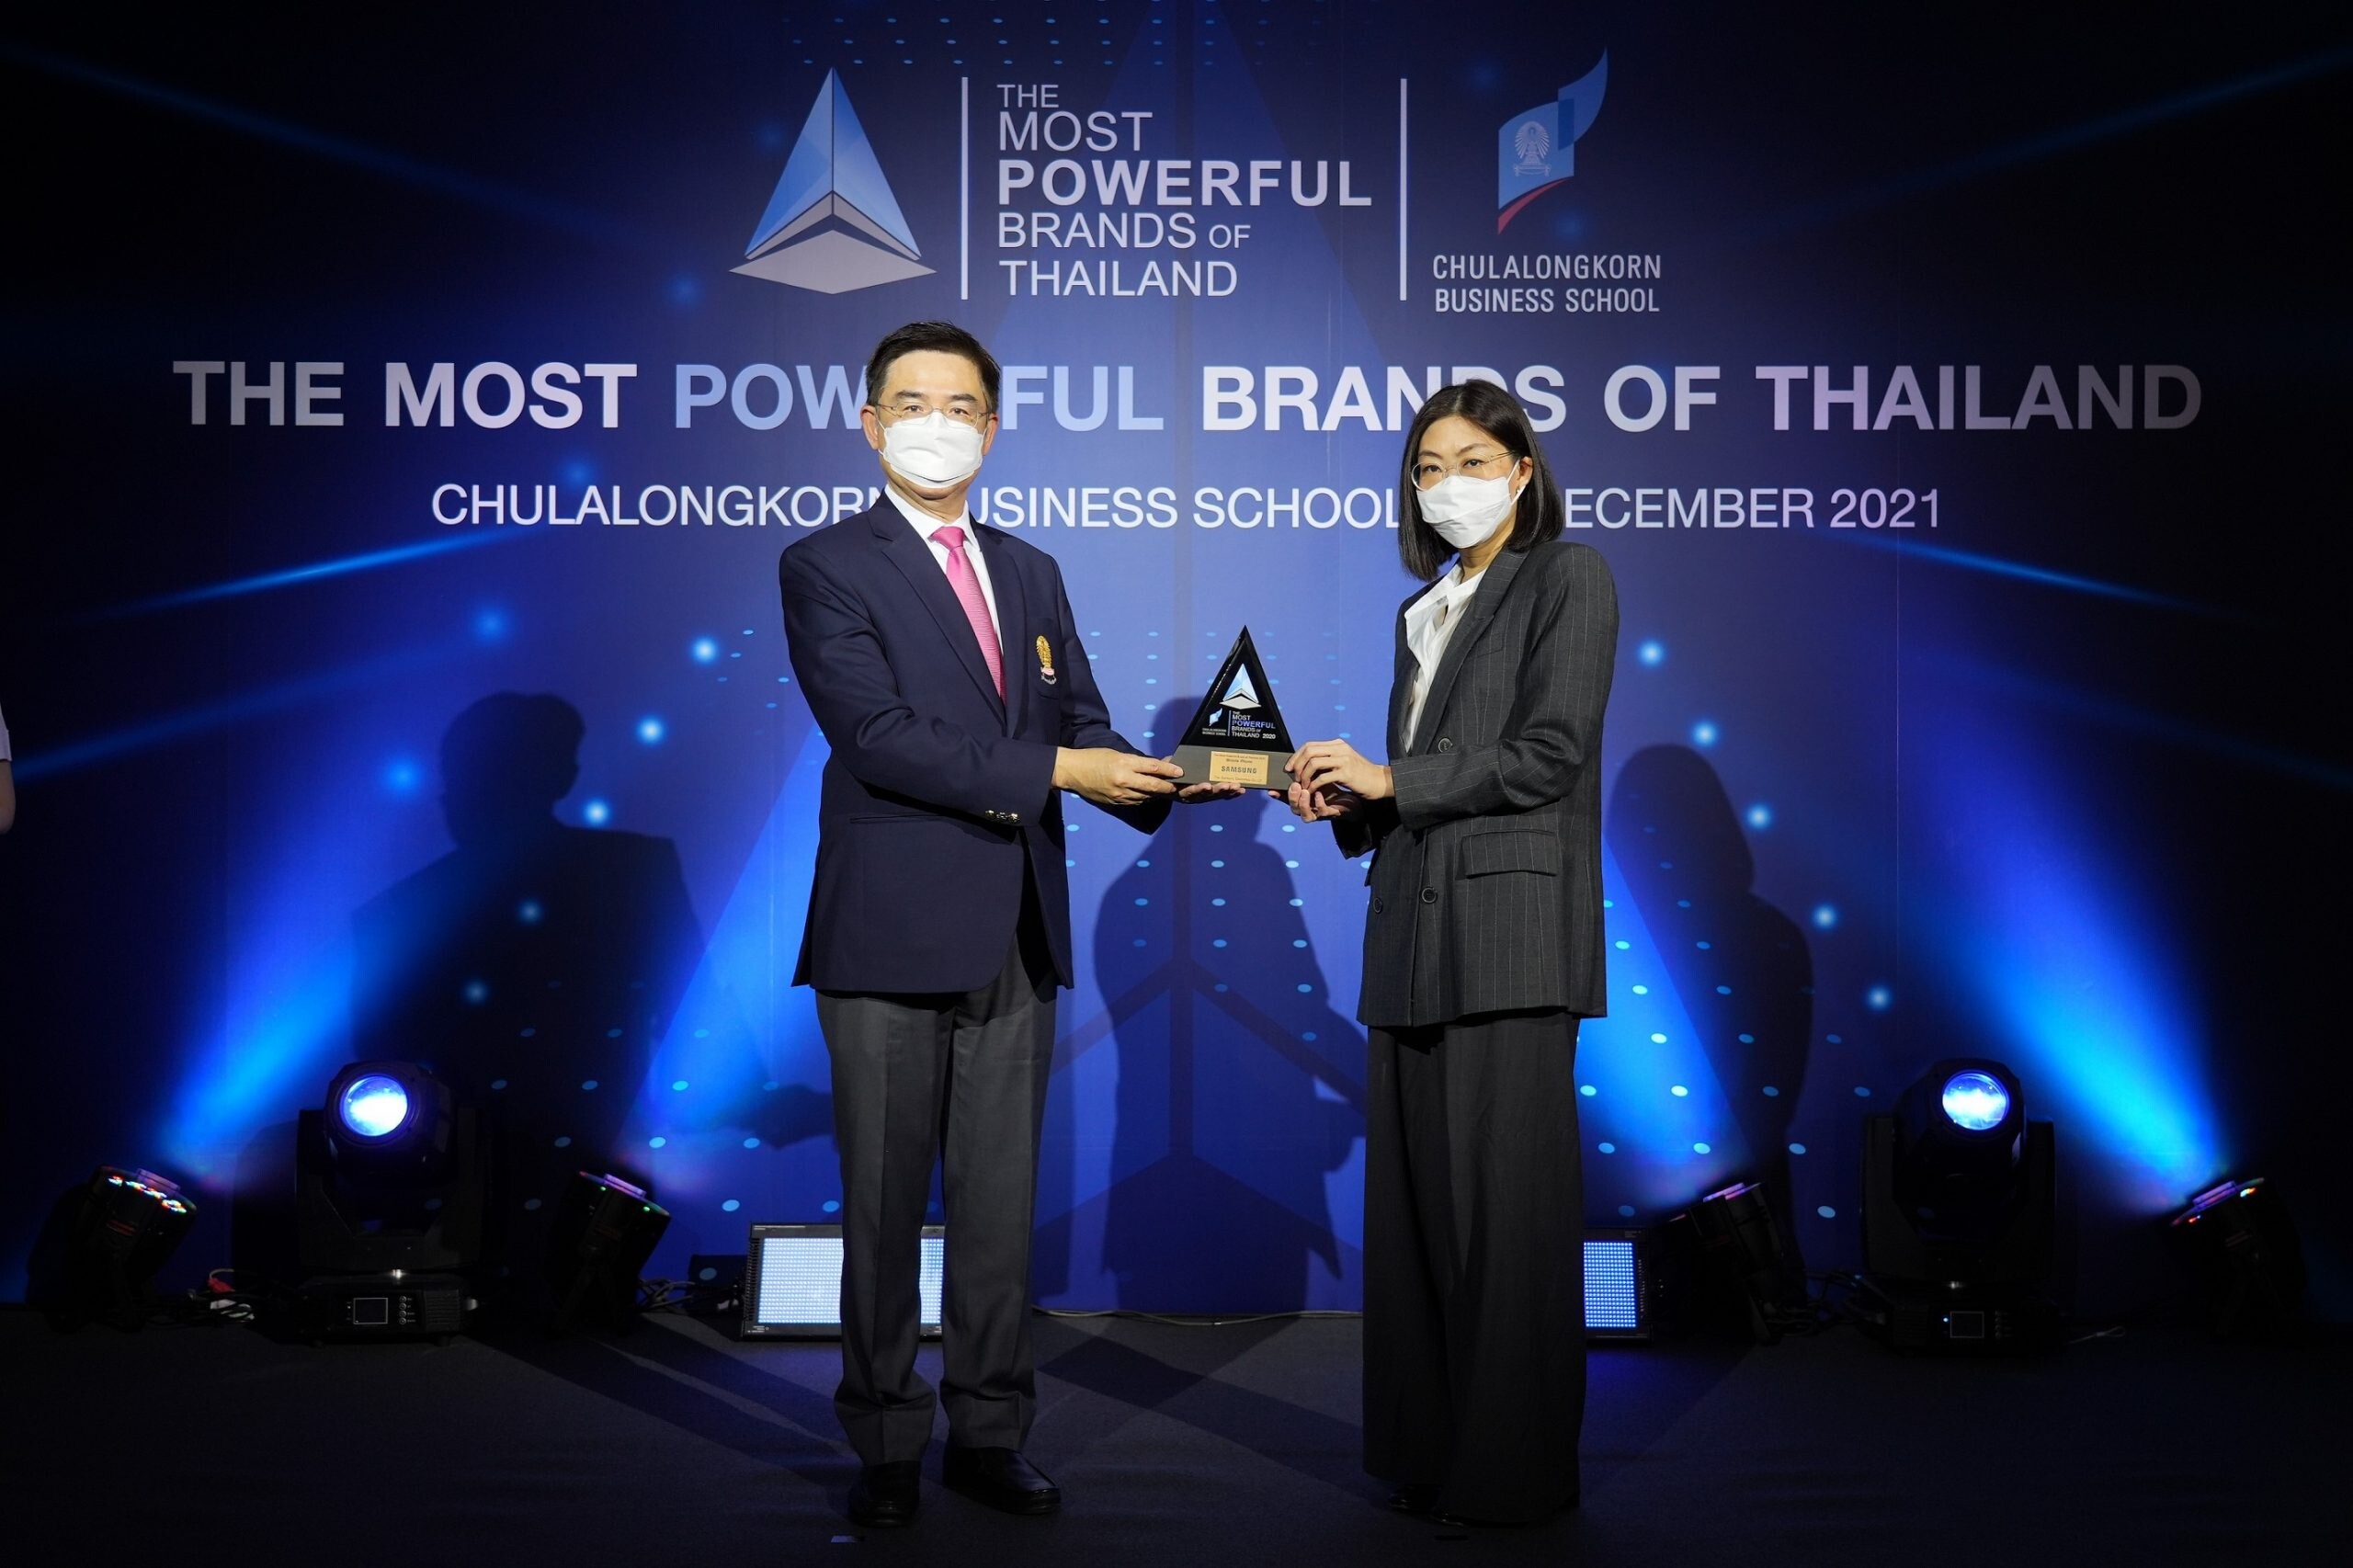 ซัมซุง คว้ารางวัลแบรนด์ที่ทรงพลังที่สุดในประเทศไทย ต่อเนื่องเป็นปีที่ 5 จากภาควิชาการตลาด คณะพาณิชยศาสตร์และการบัญชี จุฬาฯ